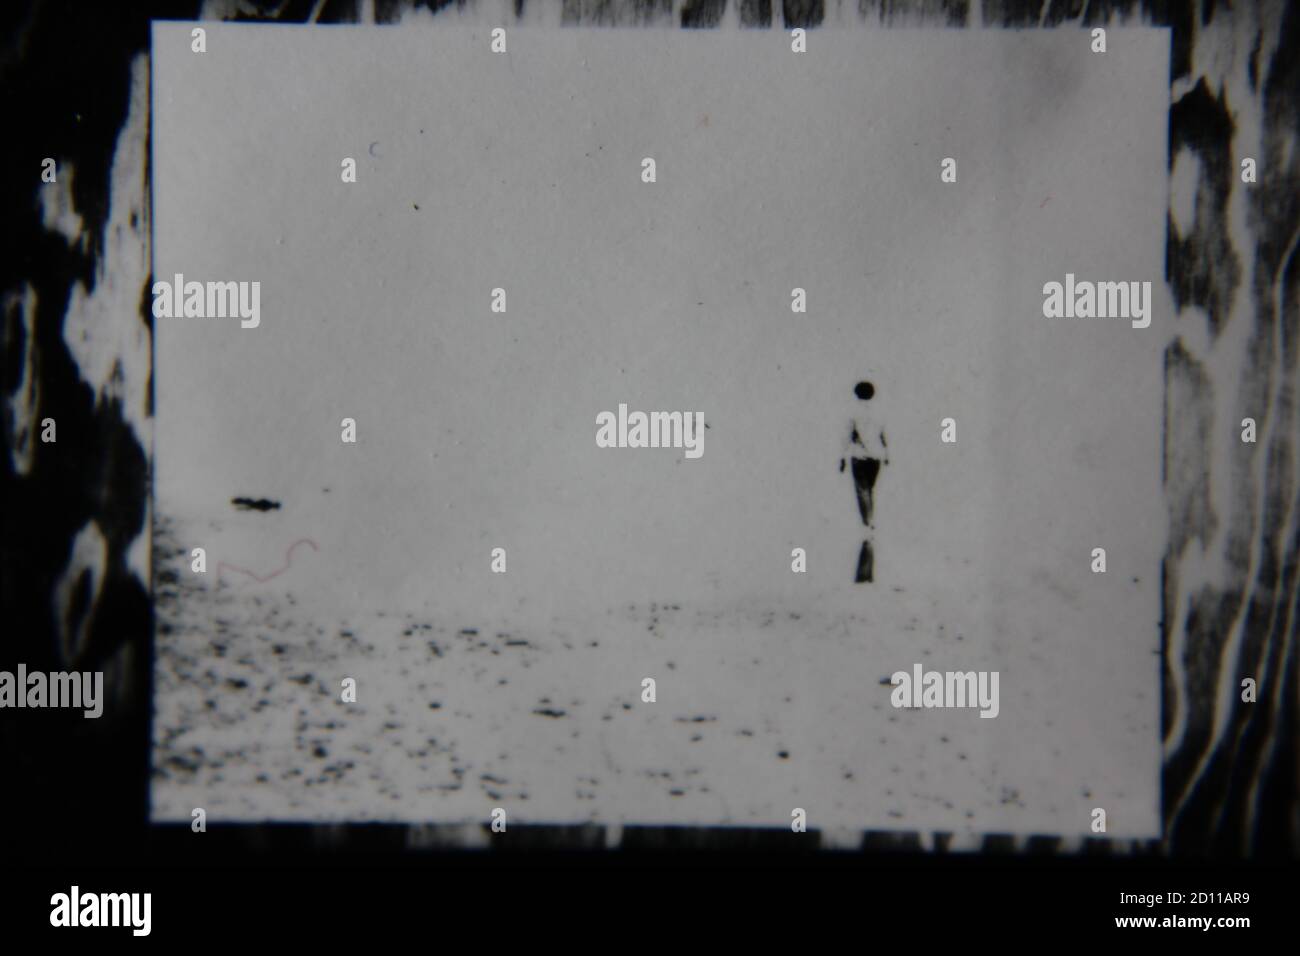 Feine Schwarz-Weiß-Vintage-Fotografie aus den 1970er Jahren eines einsamen Menschen, der mitten im Nirgendwo steht. Stockfoto